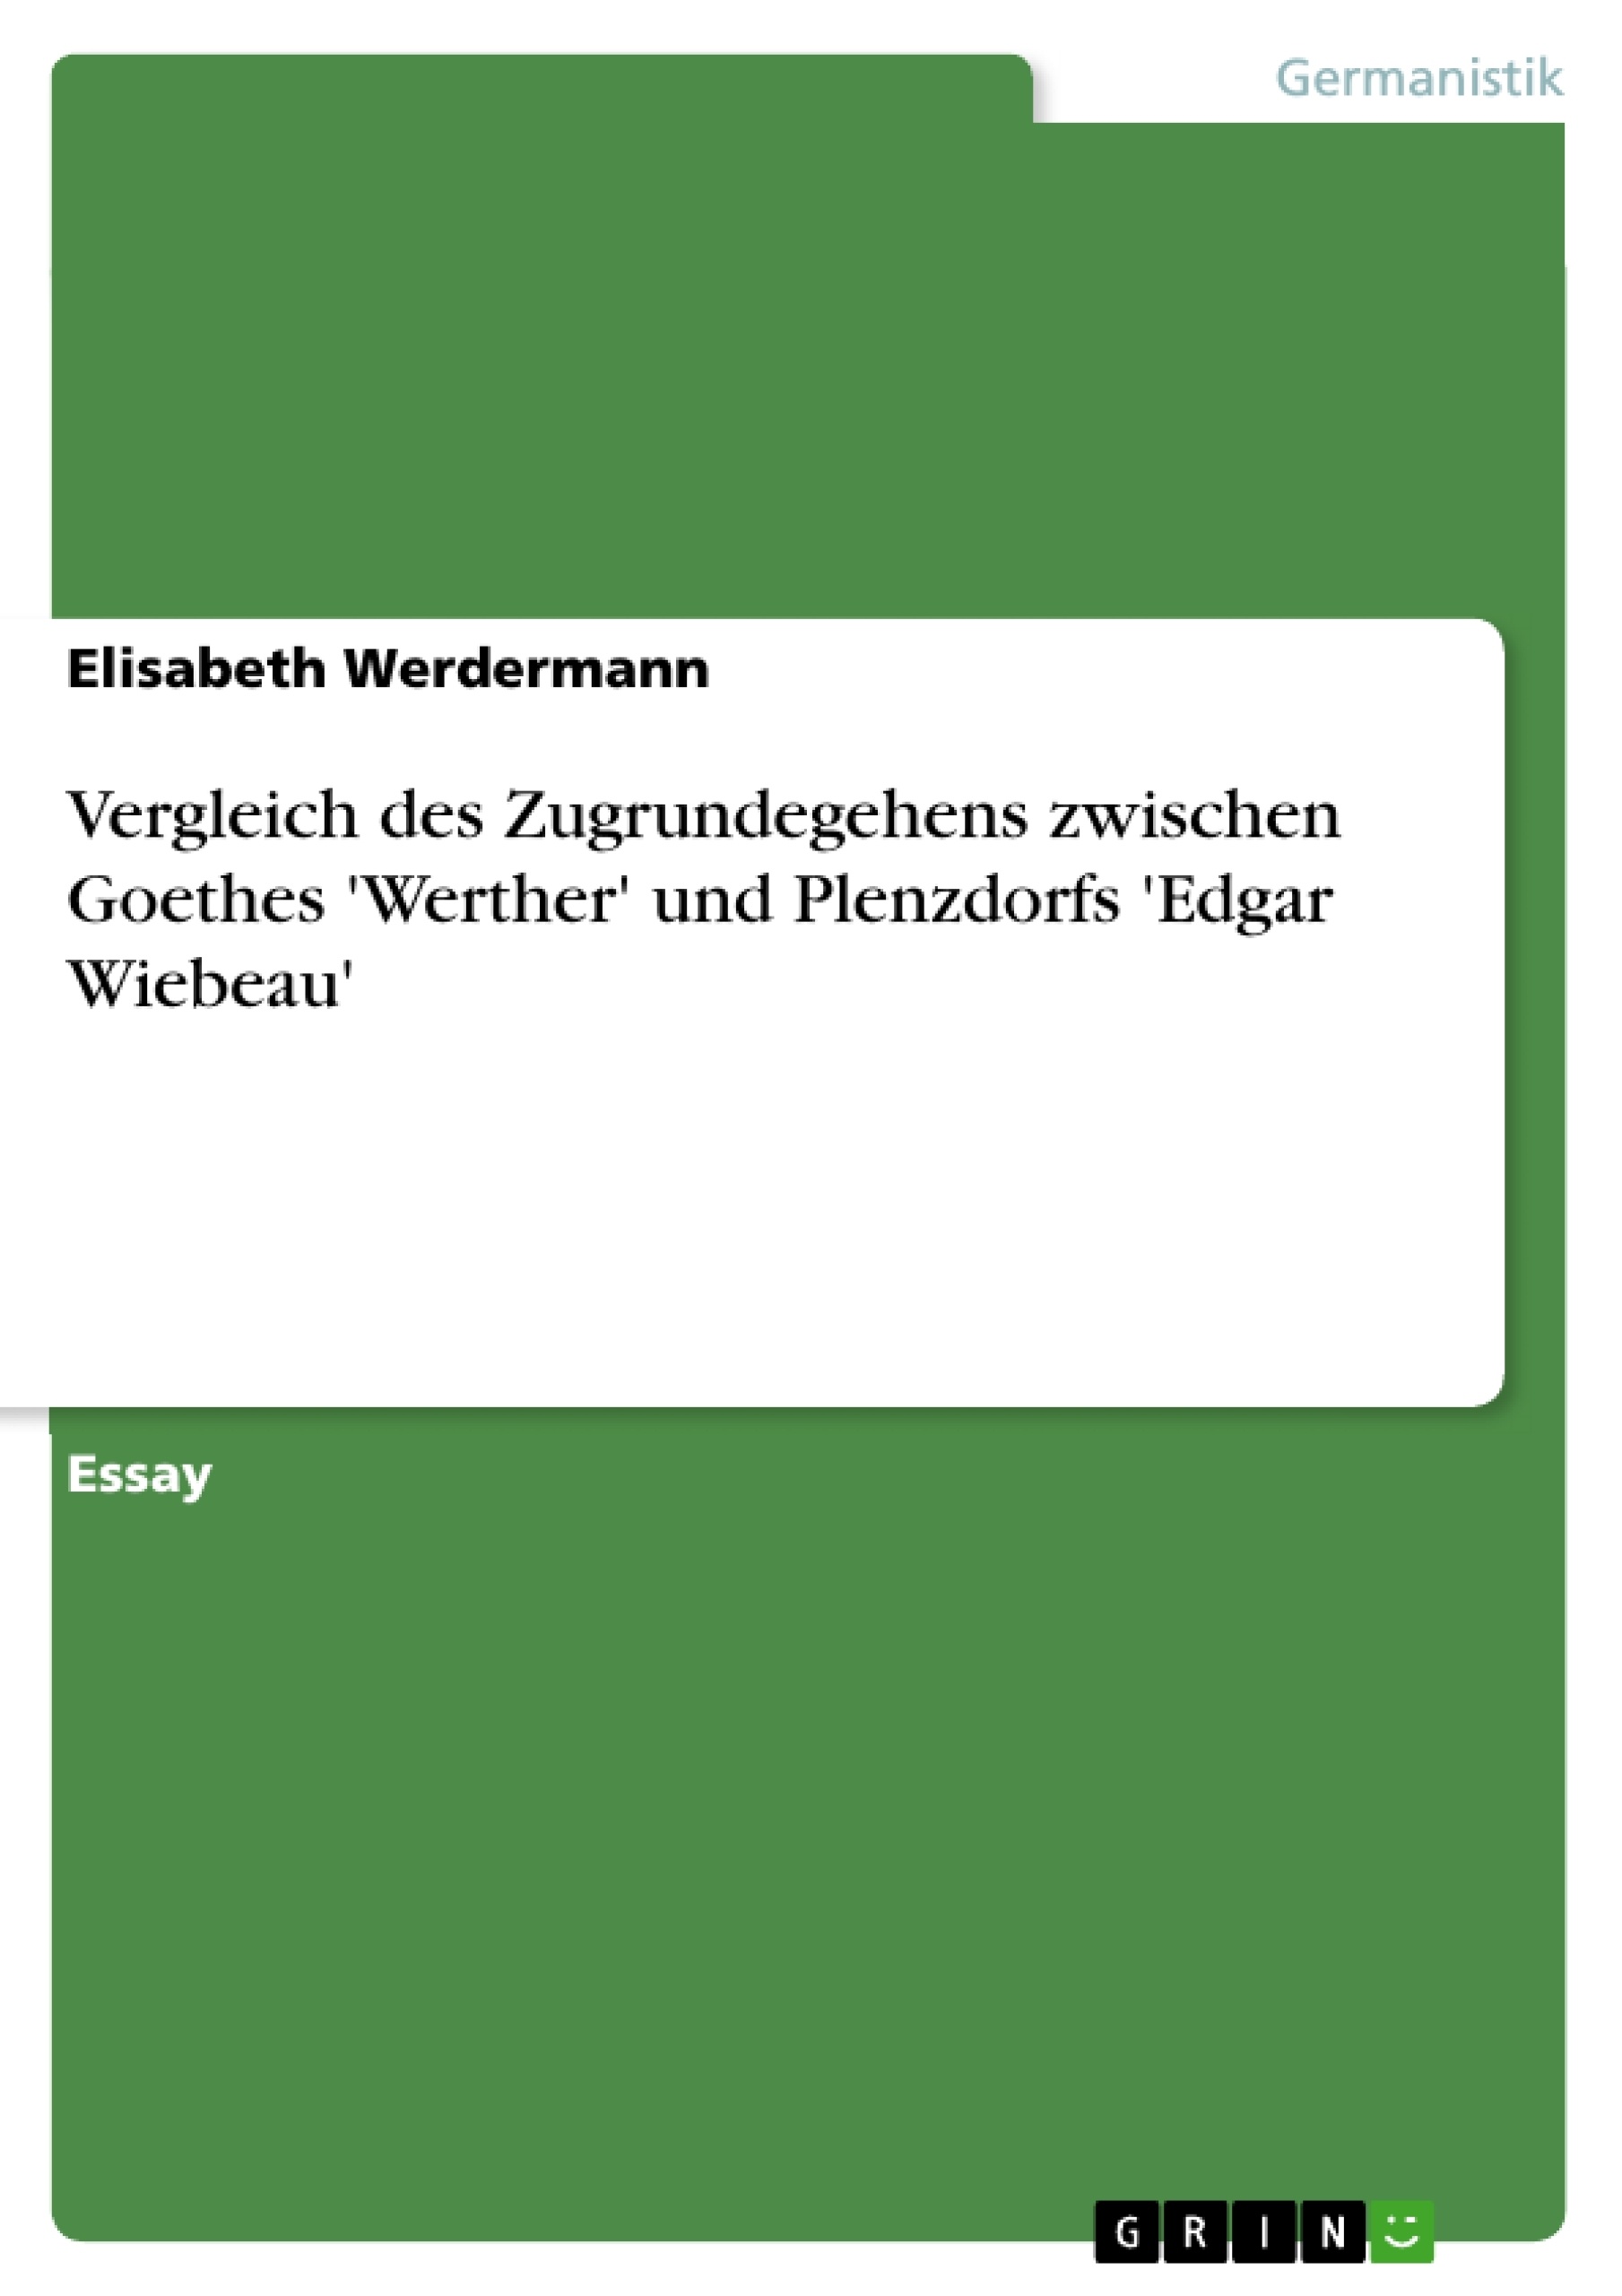 Title: Vergleich des Zugrundegehens zwischen Goethes 'Werther' und Plenzdorfs 'Edgar Wiebeau'